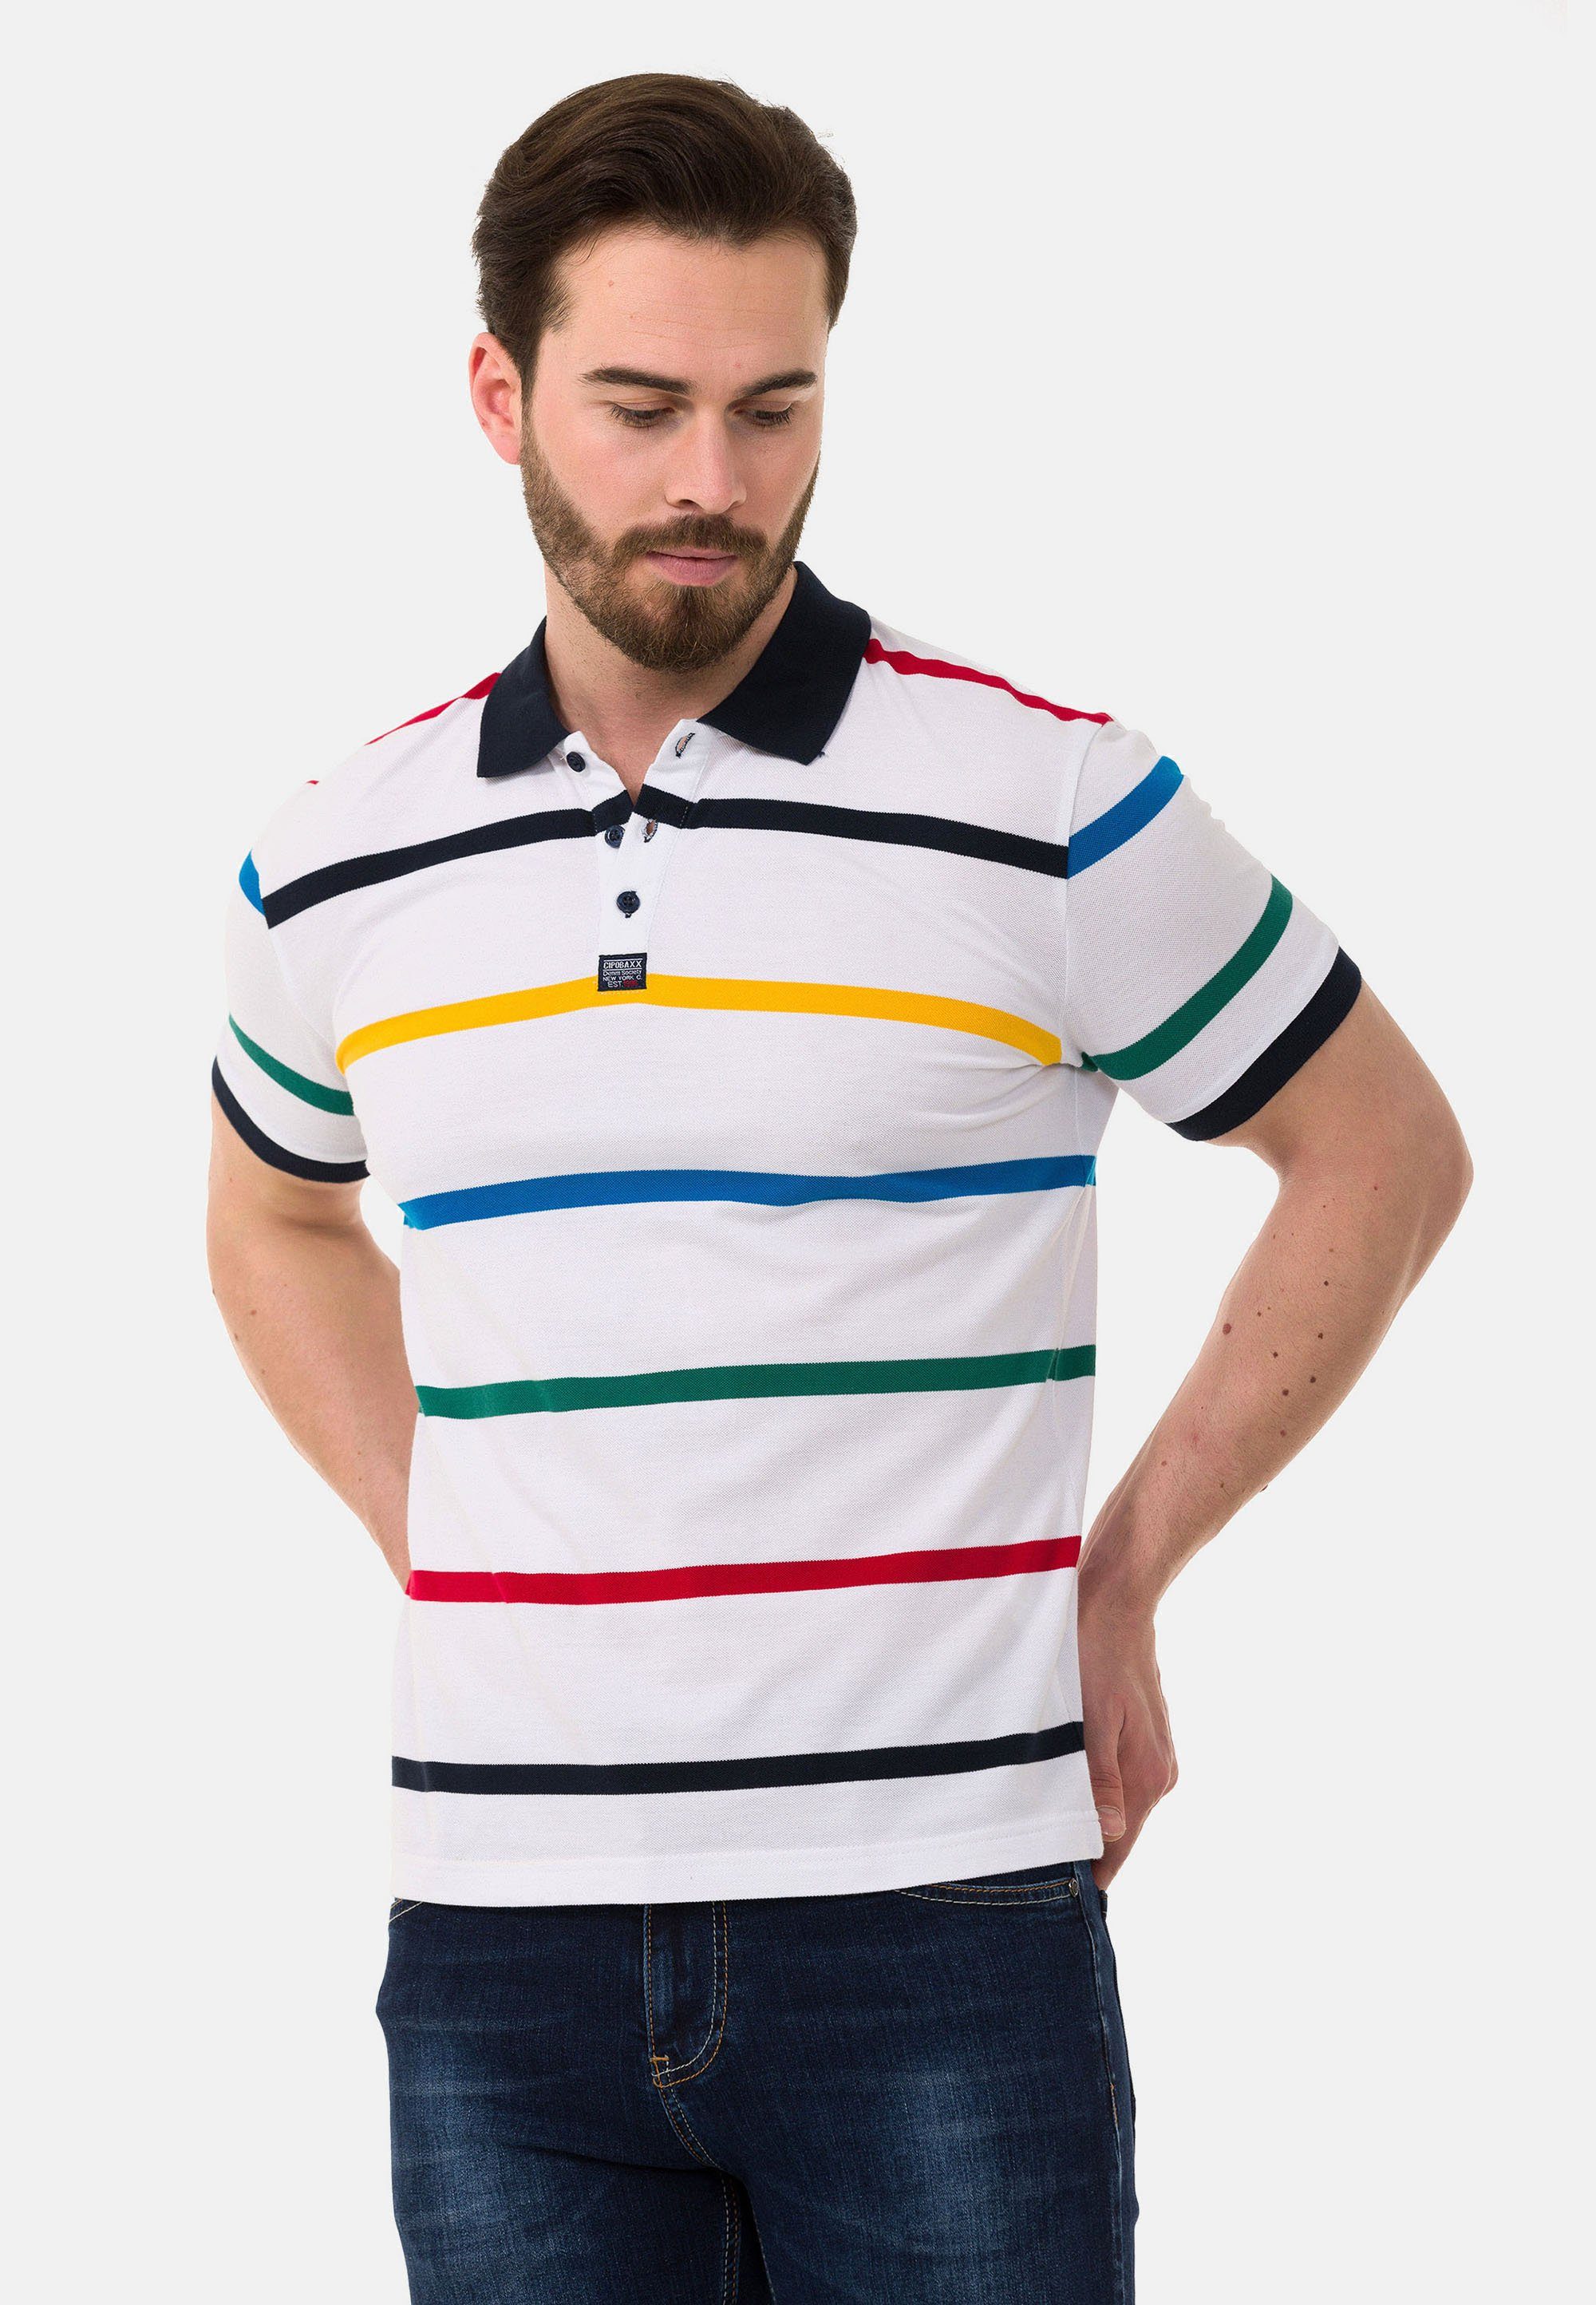 mit Cipo Poloshirt & weiß farbenfrohem Streifen-Design Baxx